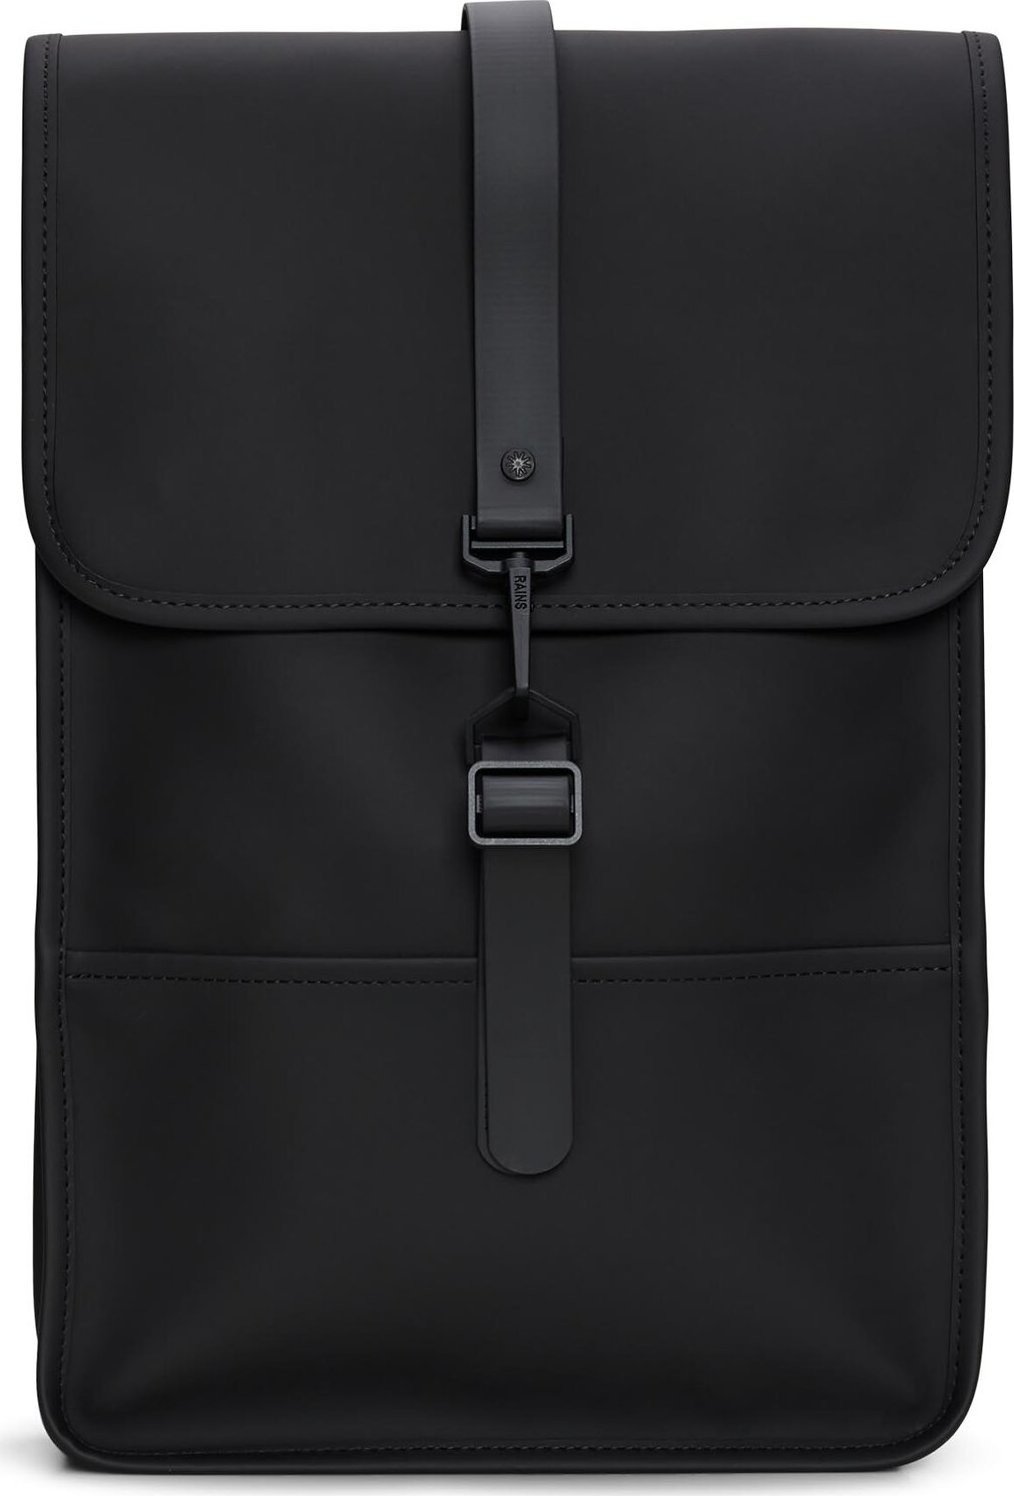 Batoh Rains Backpack Mini W3 13020 Black